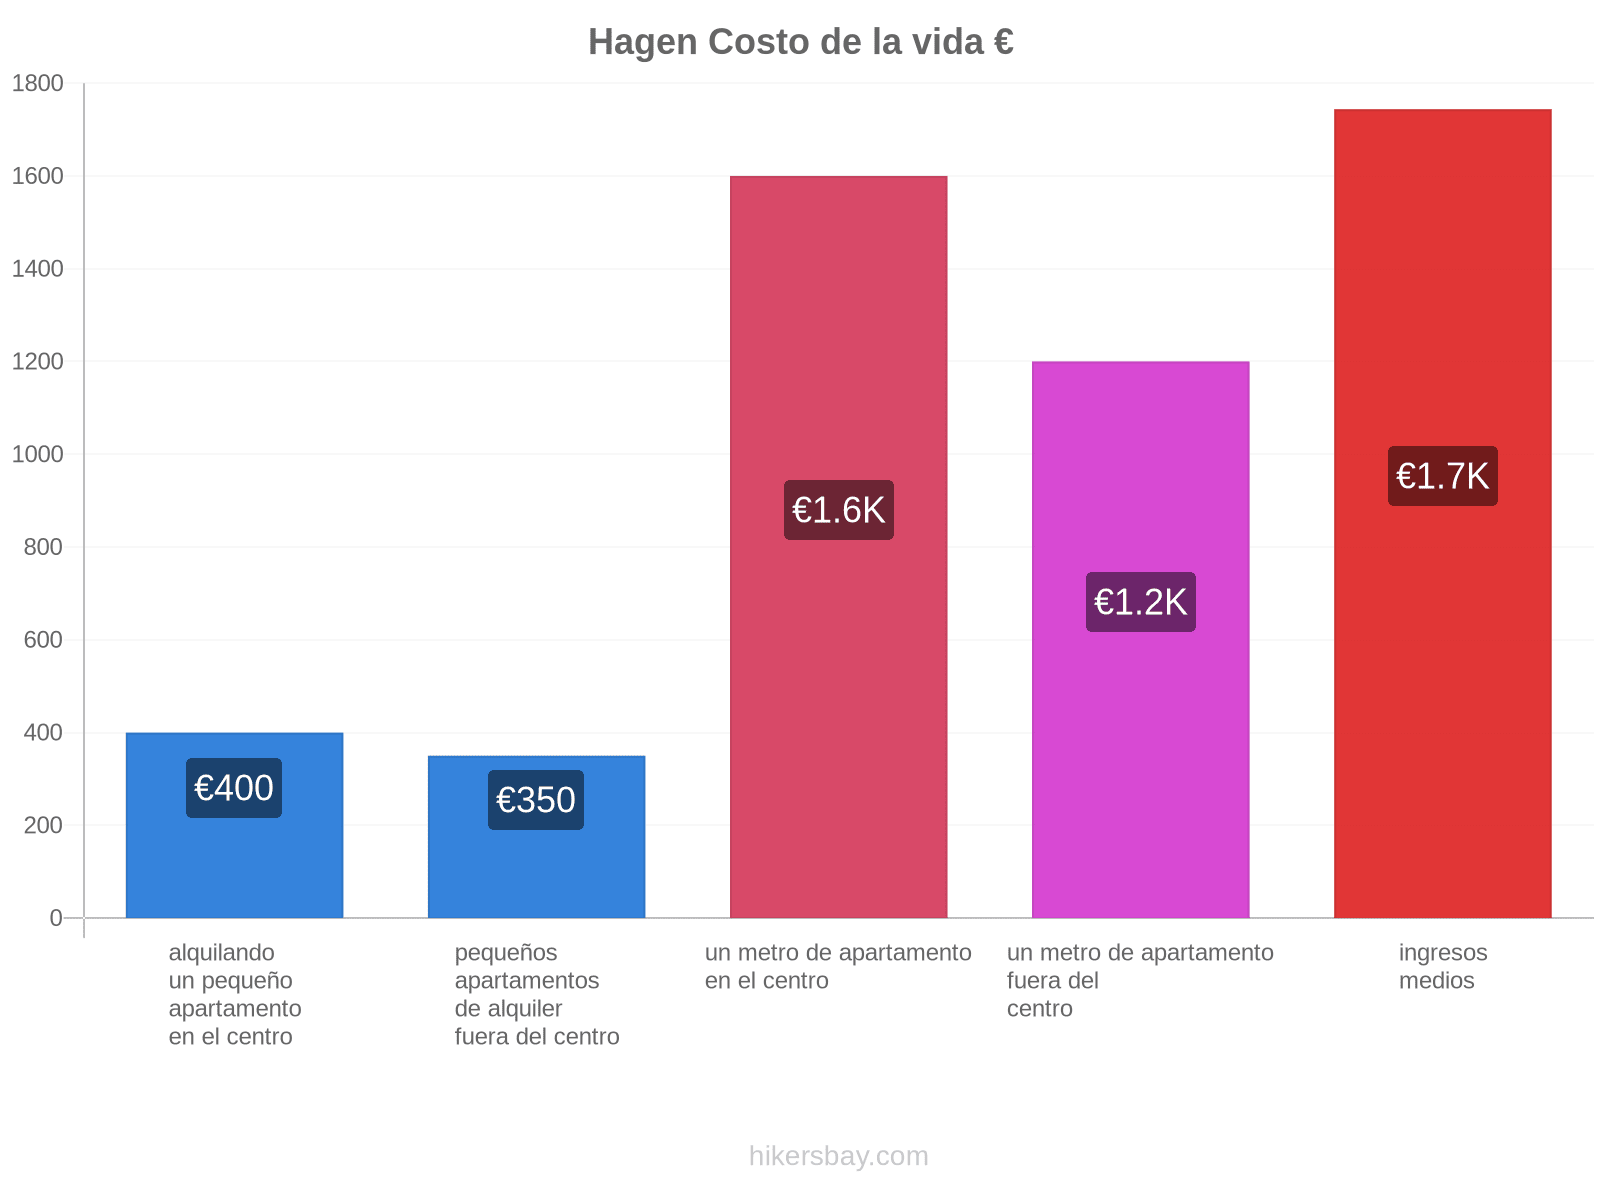 Hagen costo de la vida hikersbay.com